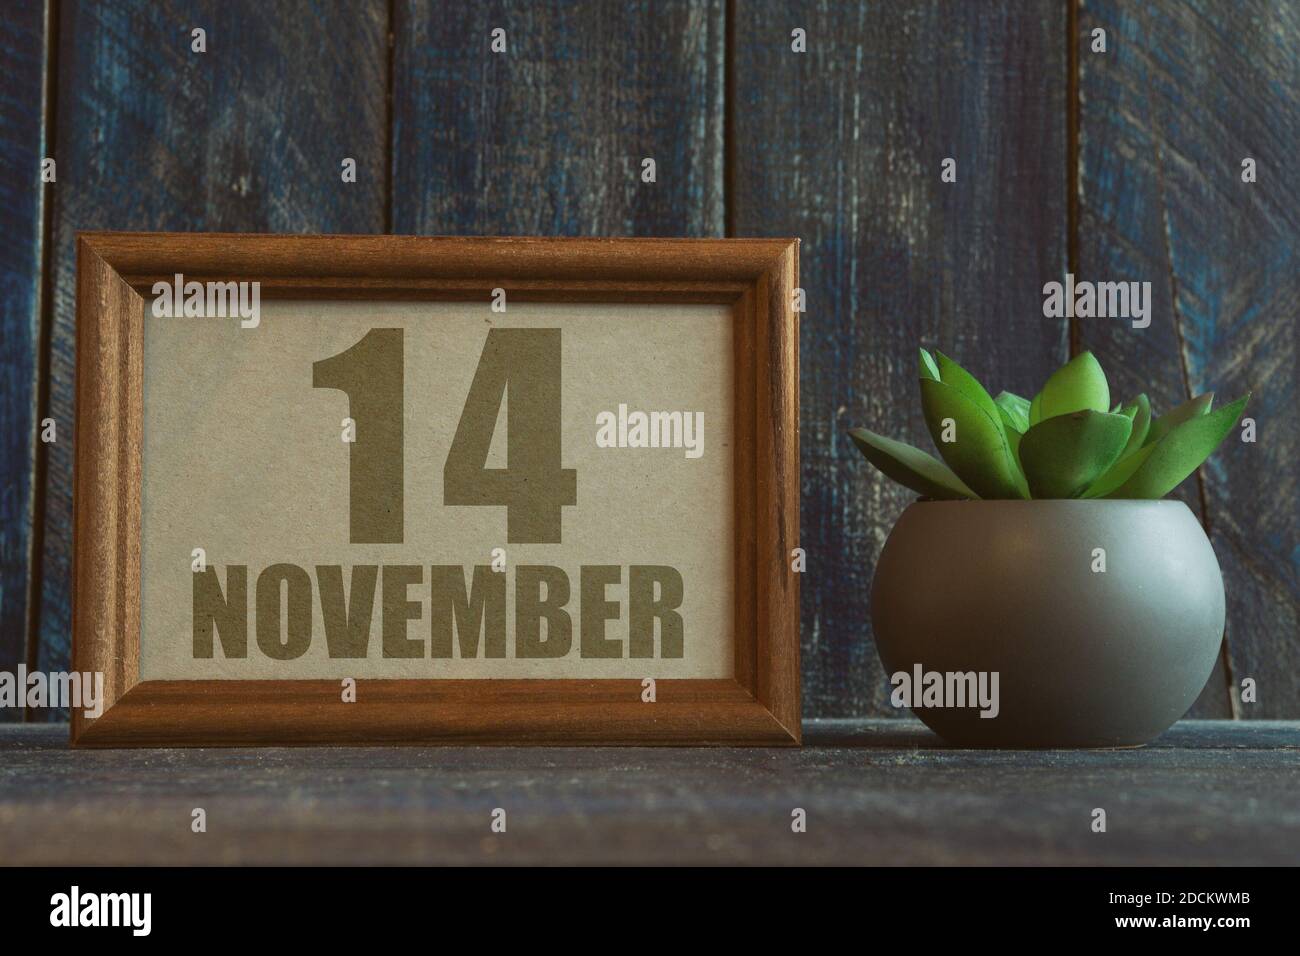 14 novembre. Jour 14 du mois, date dans le cadre à côté de succulent sur fond de bois automne mois, jour de l'année concept Banque D'Images